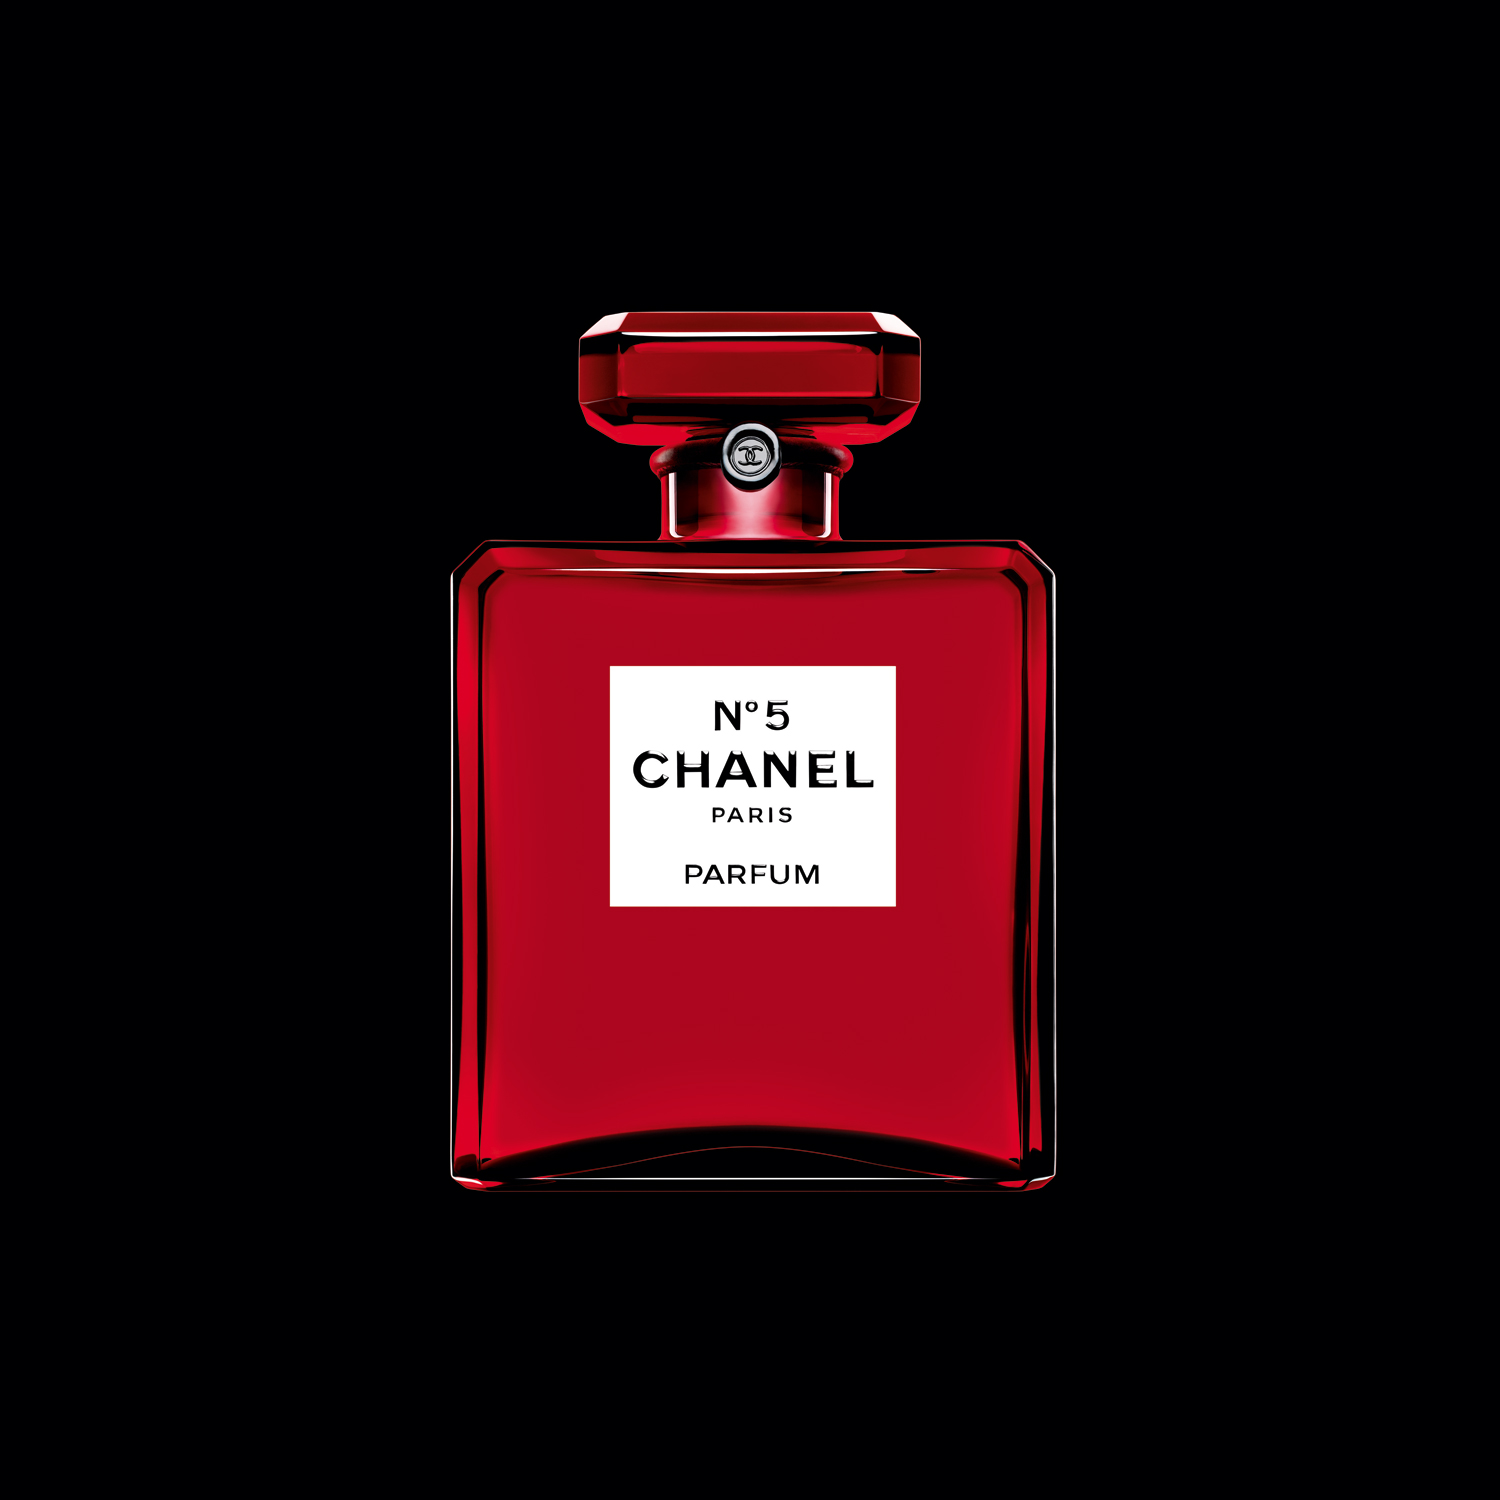 Chanel No 5 Parfum Red Edition Chanel perfume una nuevo fragancia